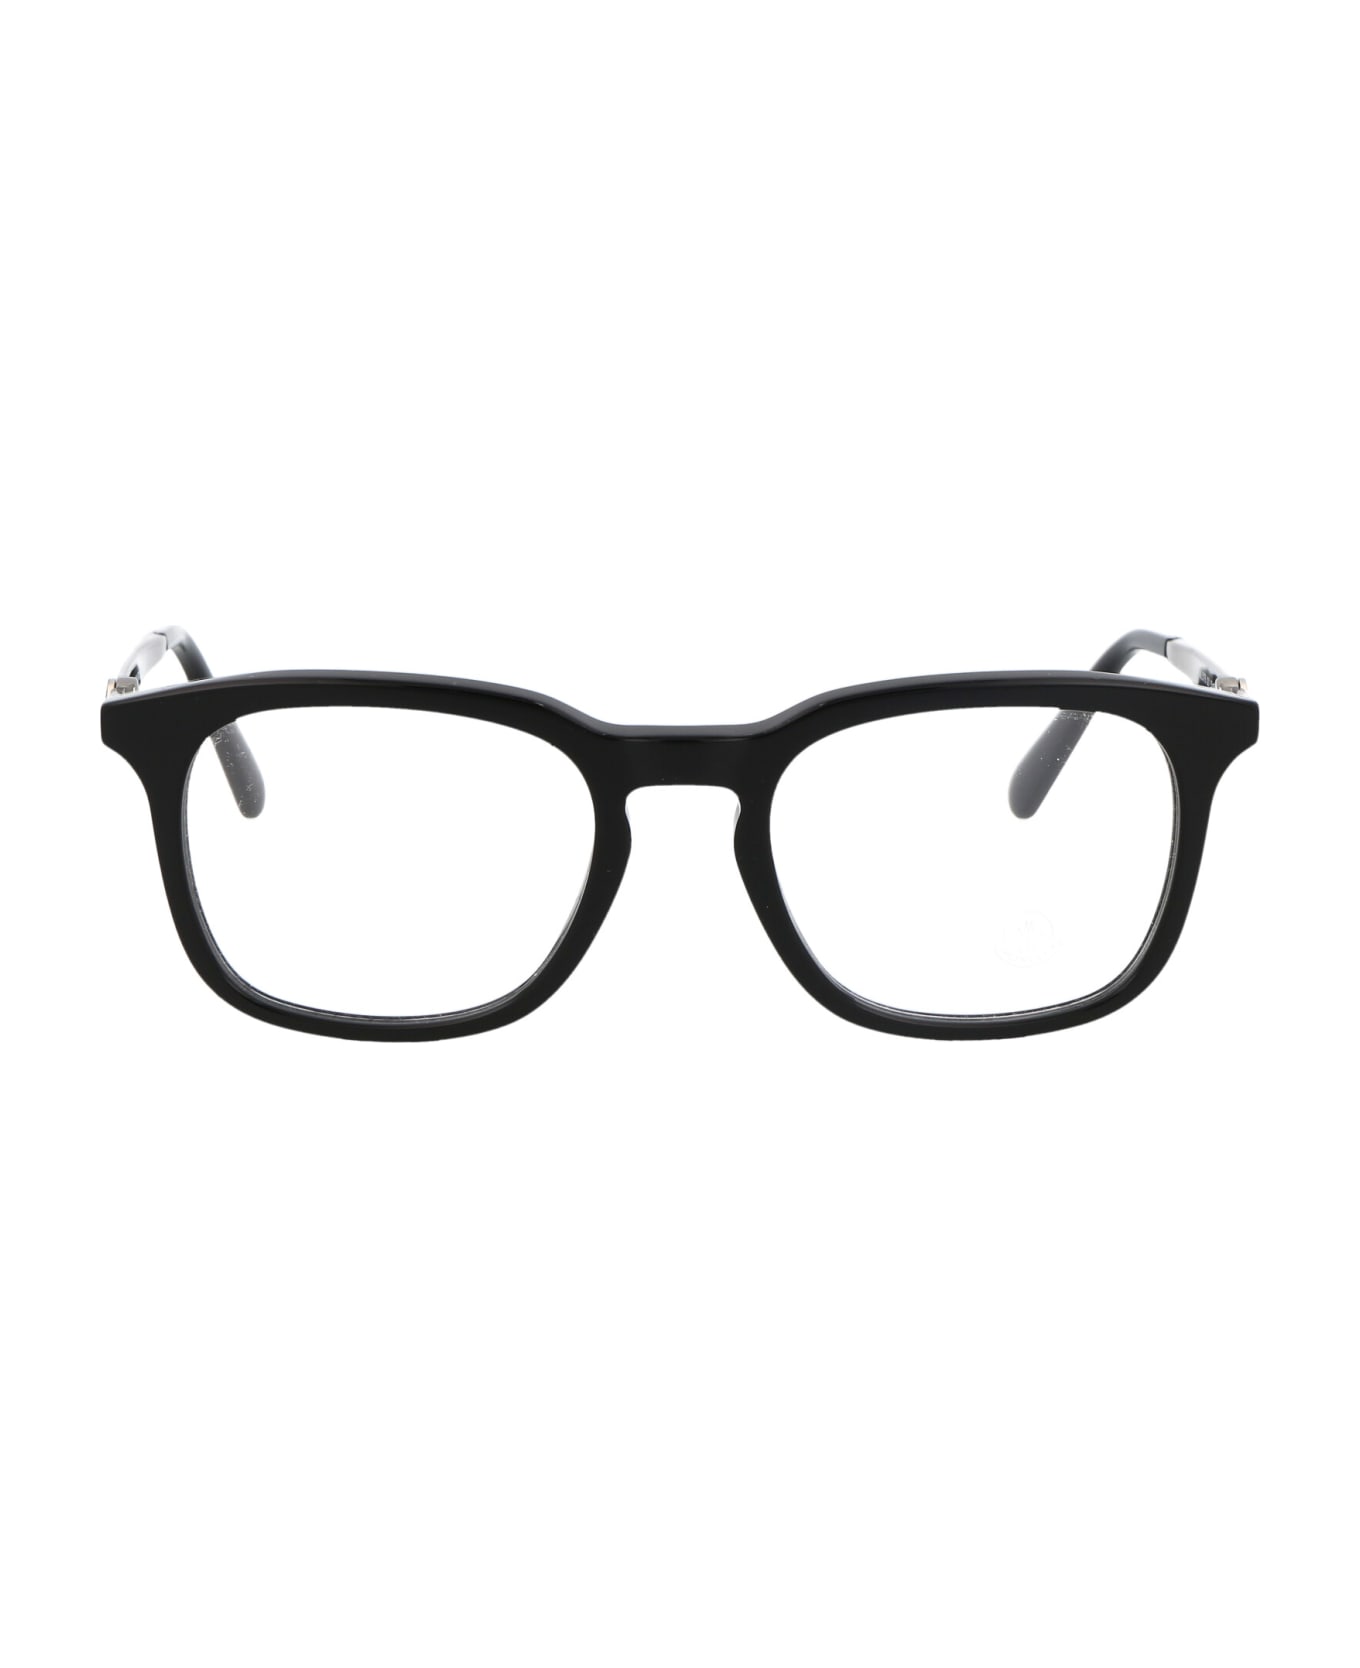 Moncler Eyewear Ml5176 Glasses - 001 Nero Lucido